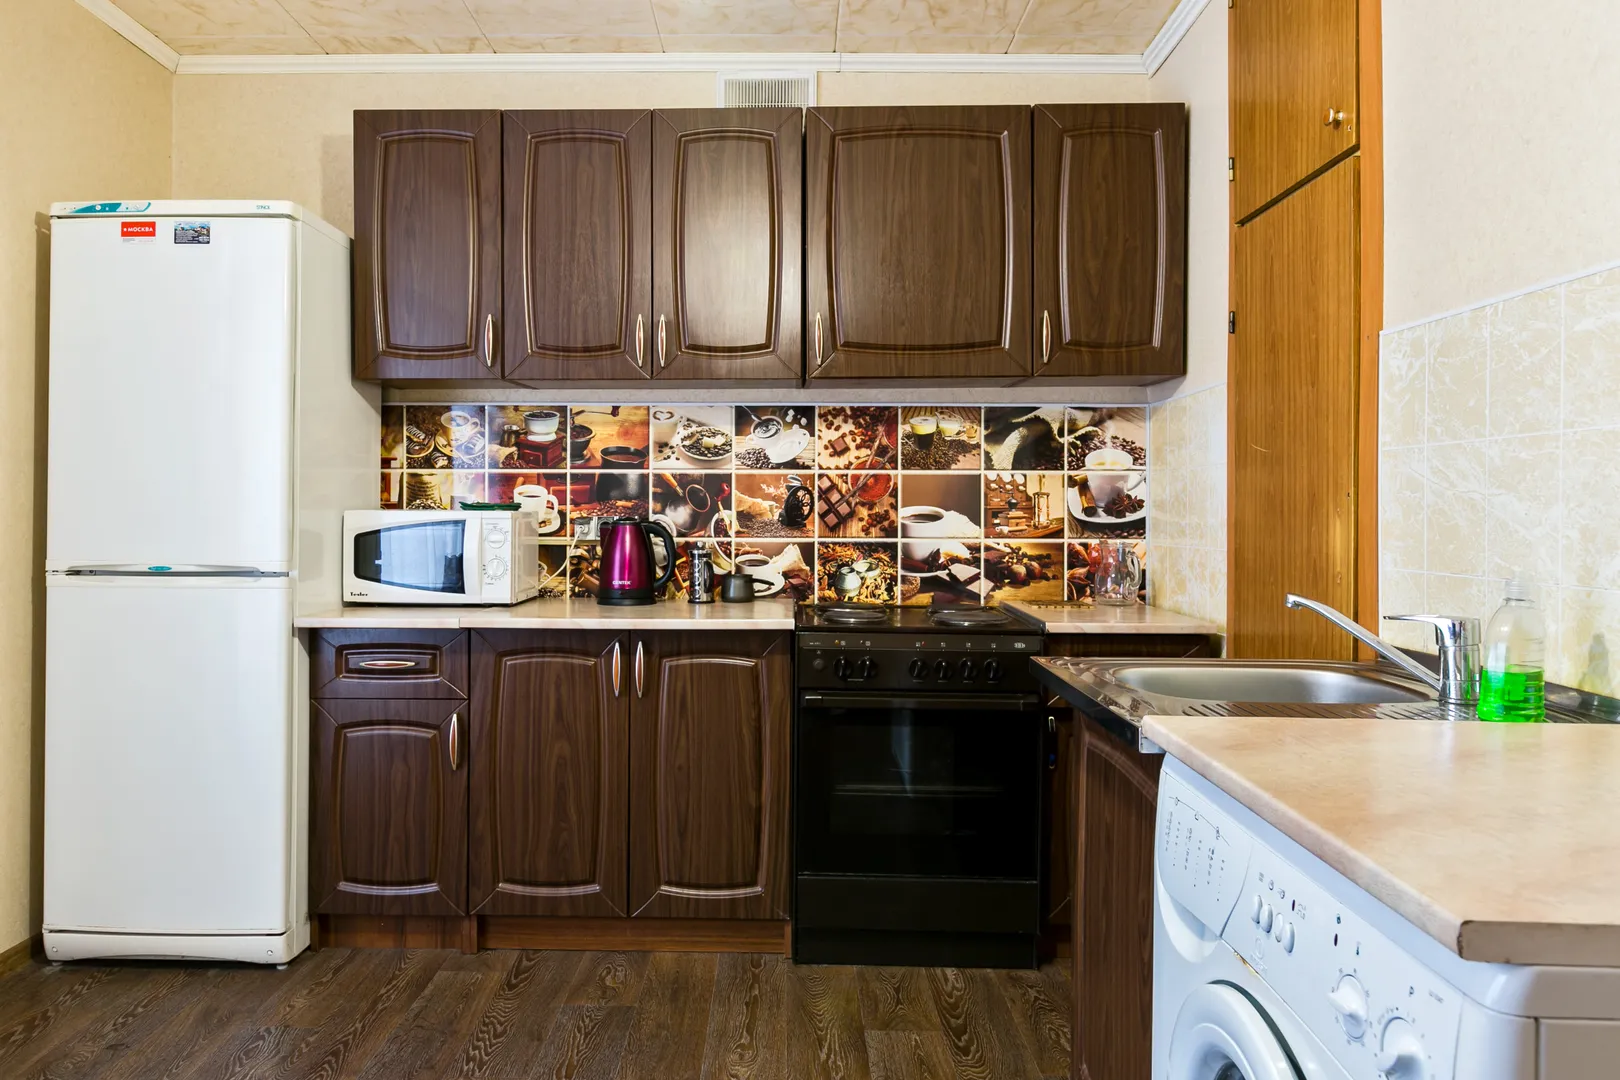 Просторная кухня со всей необходимой мебелью и техникой, ЖК-телевизор, стиральная машина-автомат. Имеется весь комплект посуды для приготовления и приема пищи.